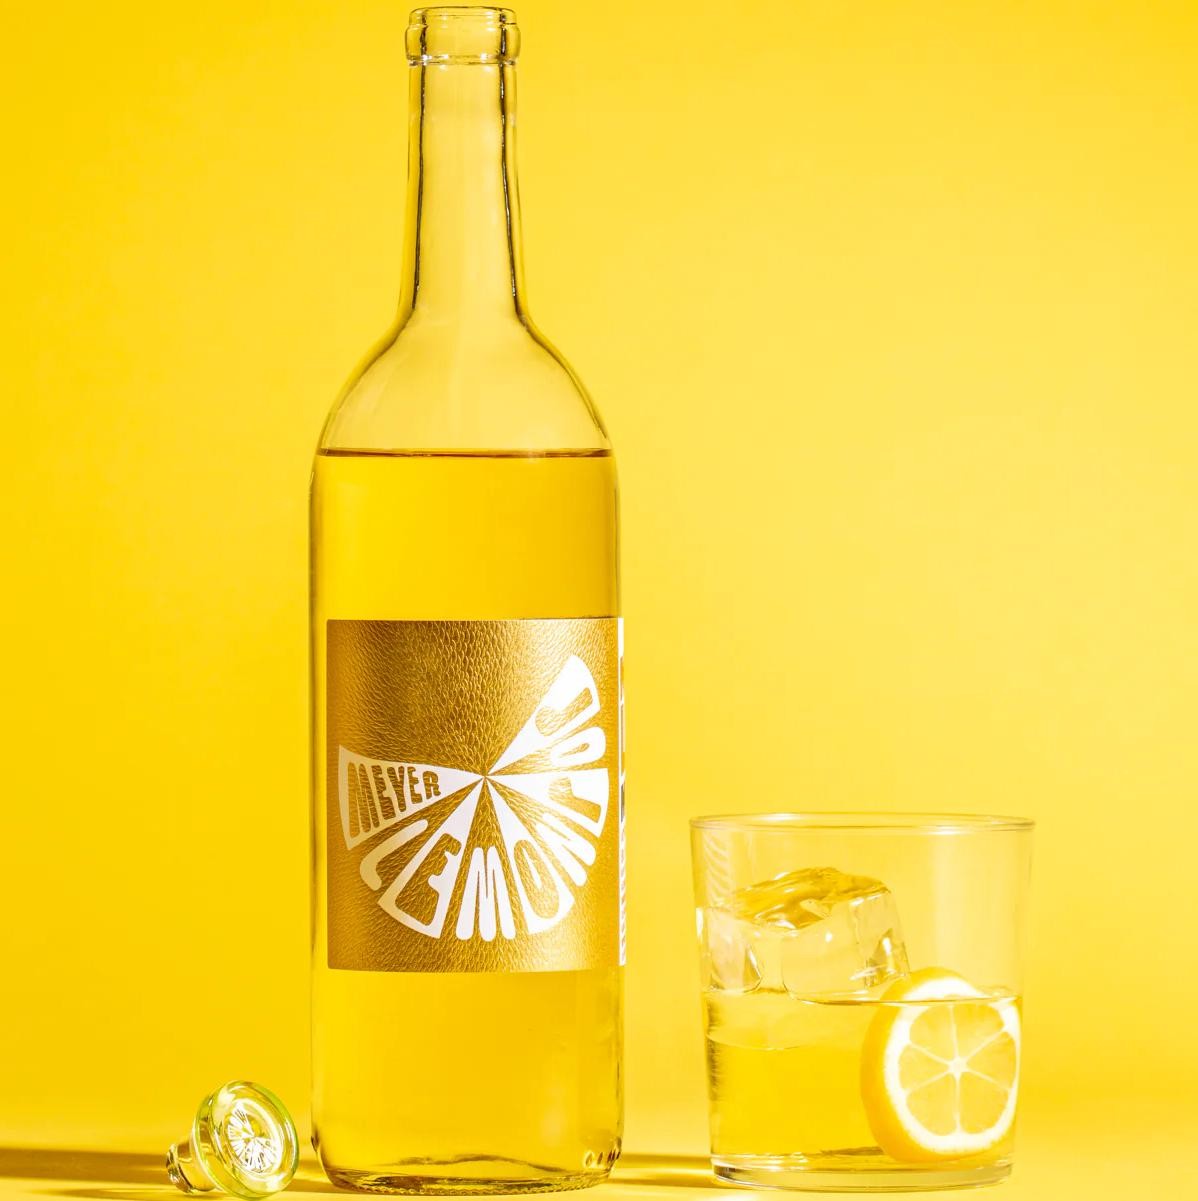 Meyer Lemon Pop, Apertif Wine